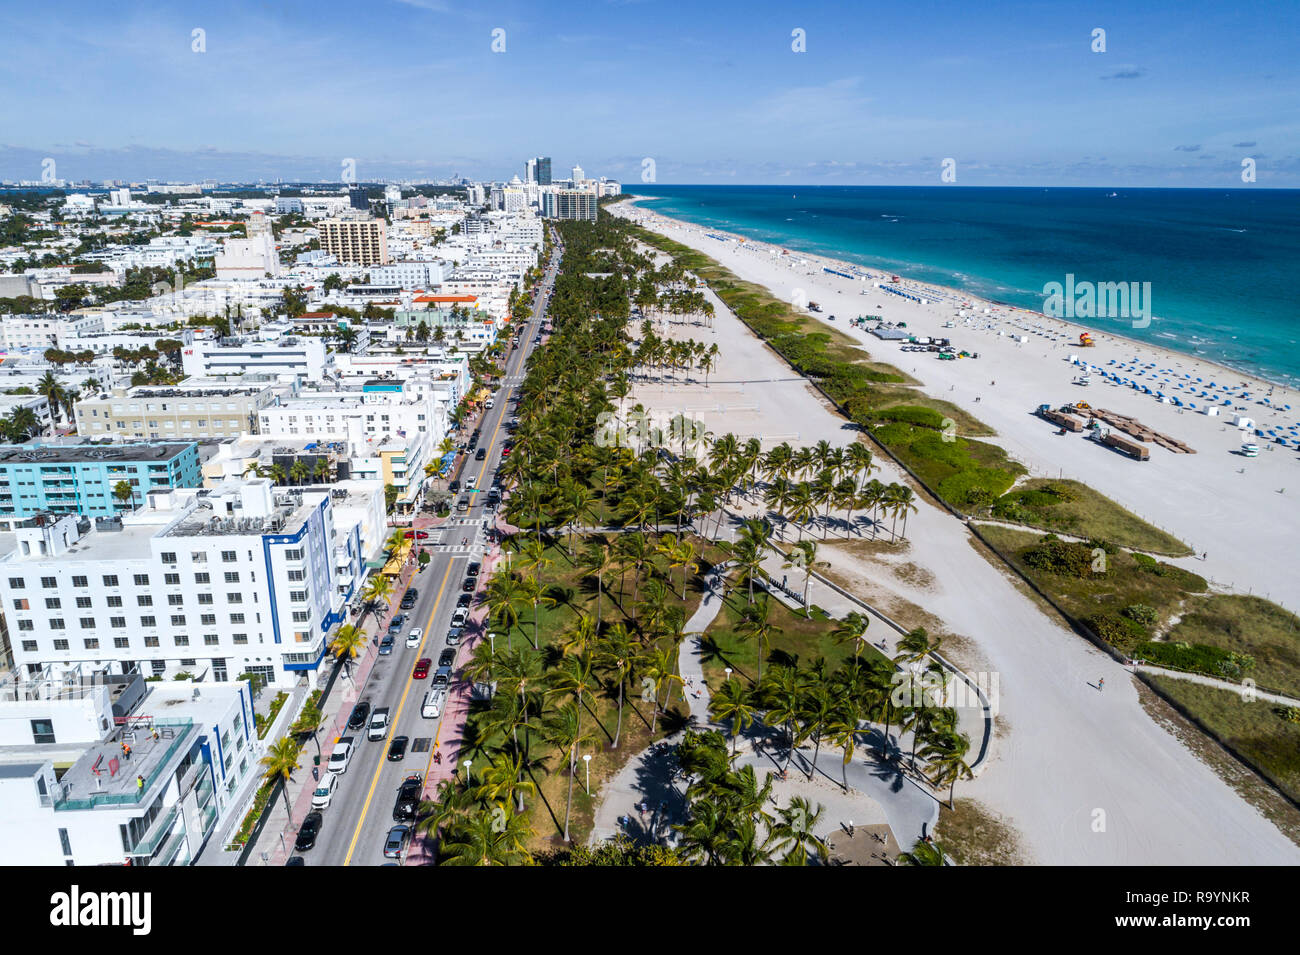 Miami Beach Florida, vue aérienne au-dessus, hôtel, Ocean Drive, Lummus Park, océan Atlantique, FL181215d19 Banque D'Images